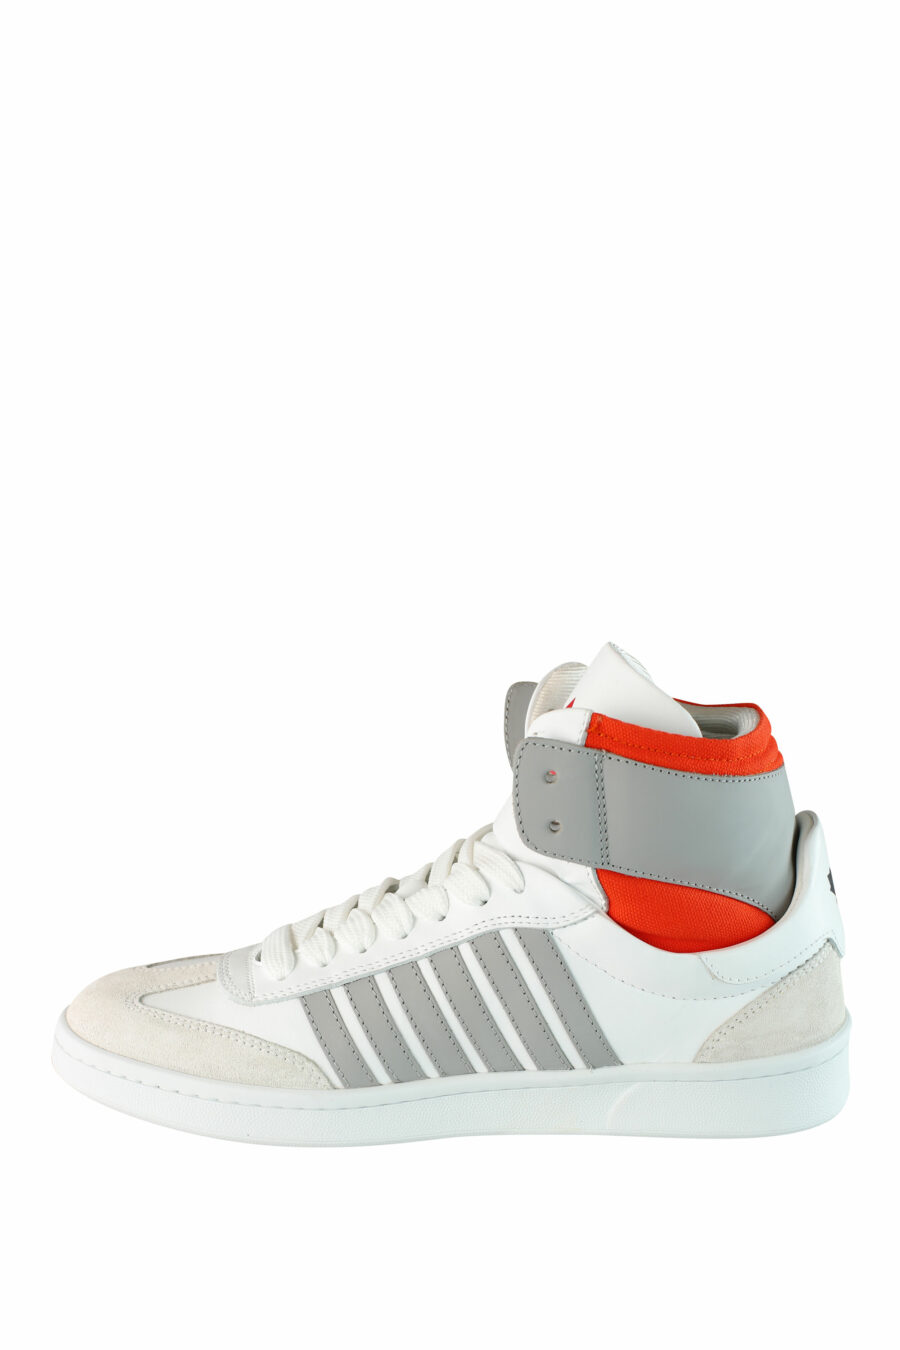 Zapatillas blancas mix "boxer" estilo botín con detalles naranjas y grises - IMG 1503